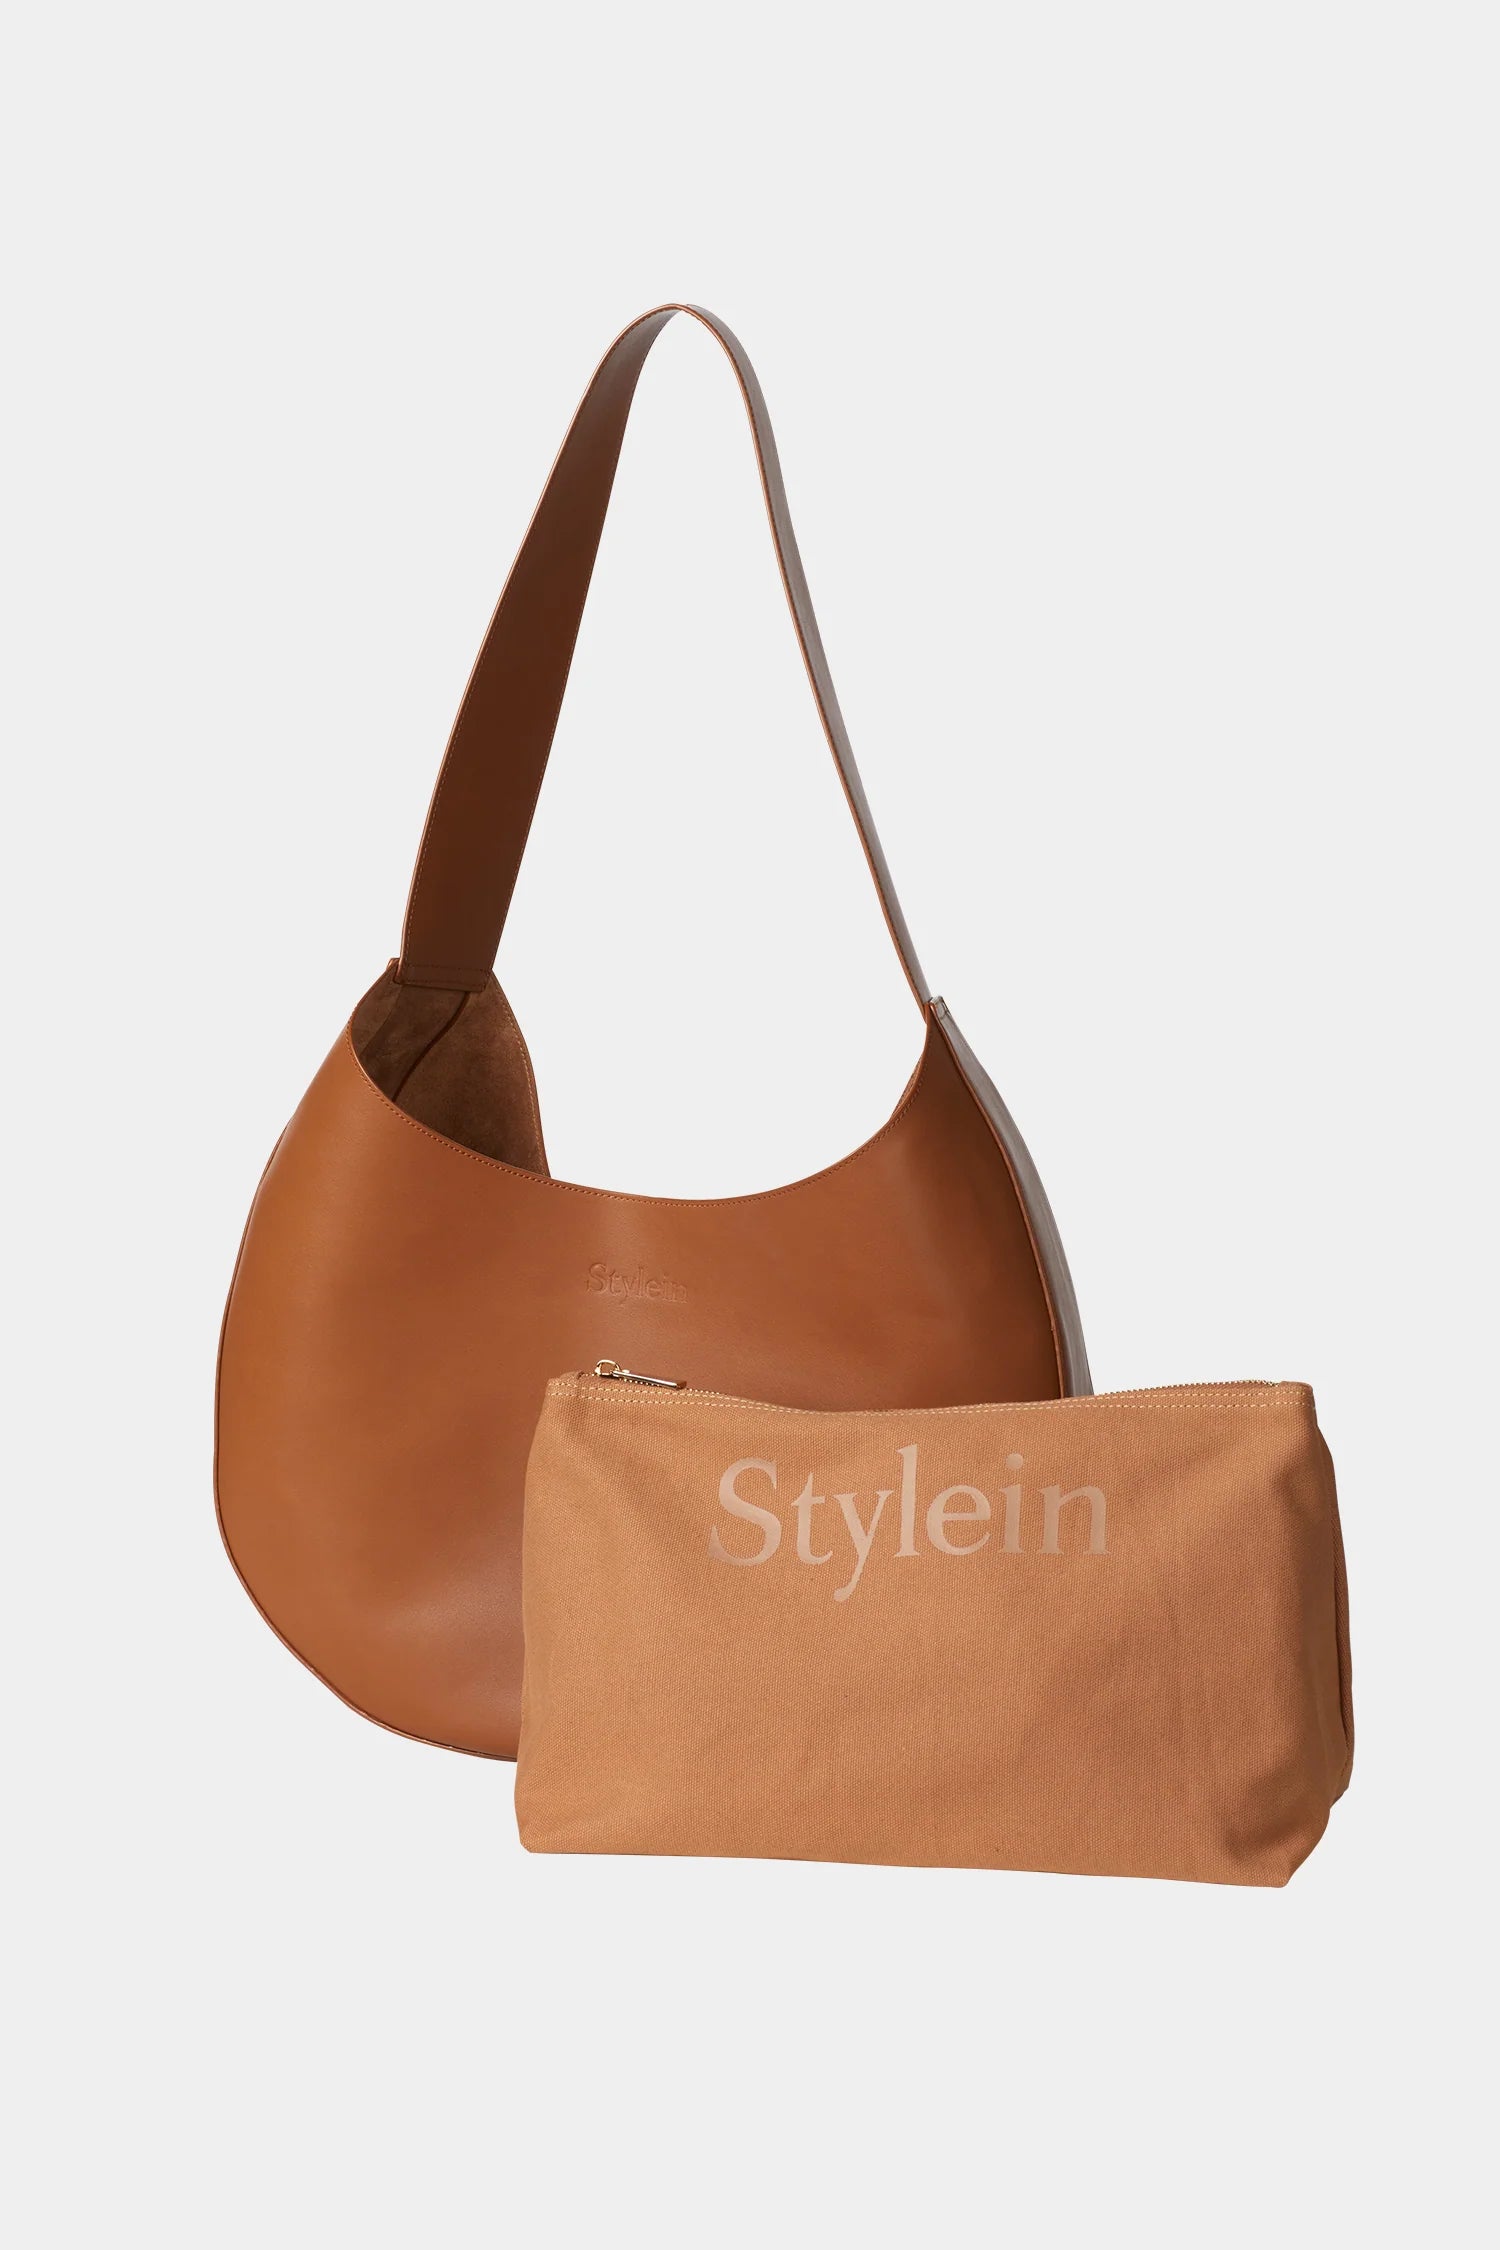 Stylein Yardly Bag Tan